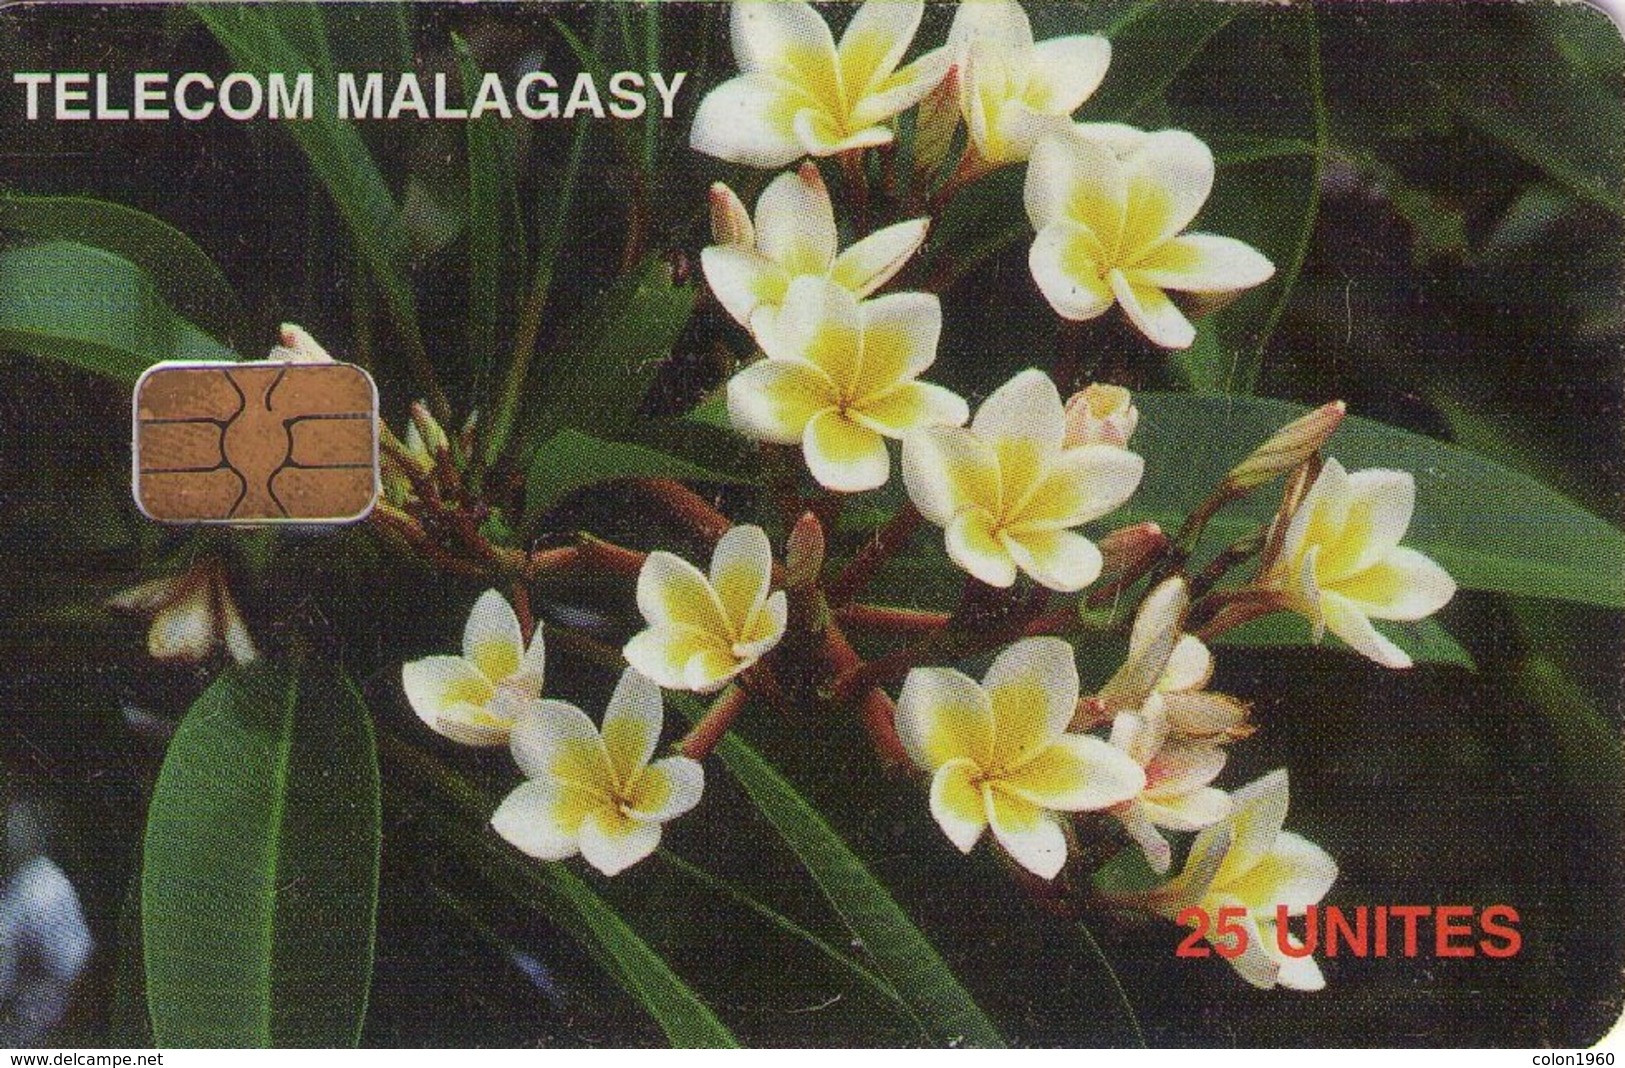 MADAGASCAR. MDG-47. Frangipanier Flowers. (012) - Madagaskar